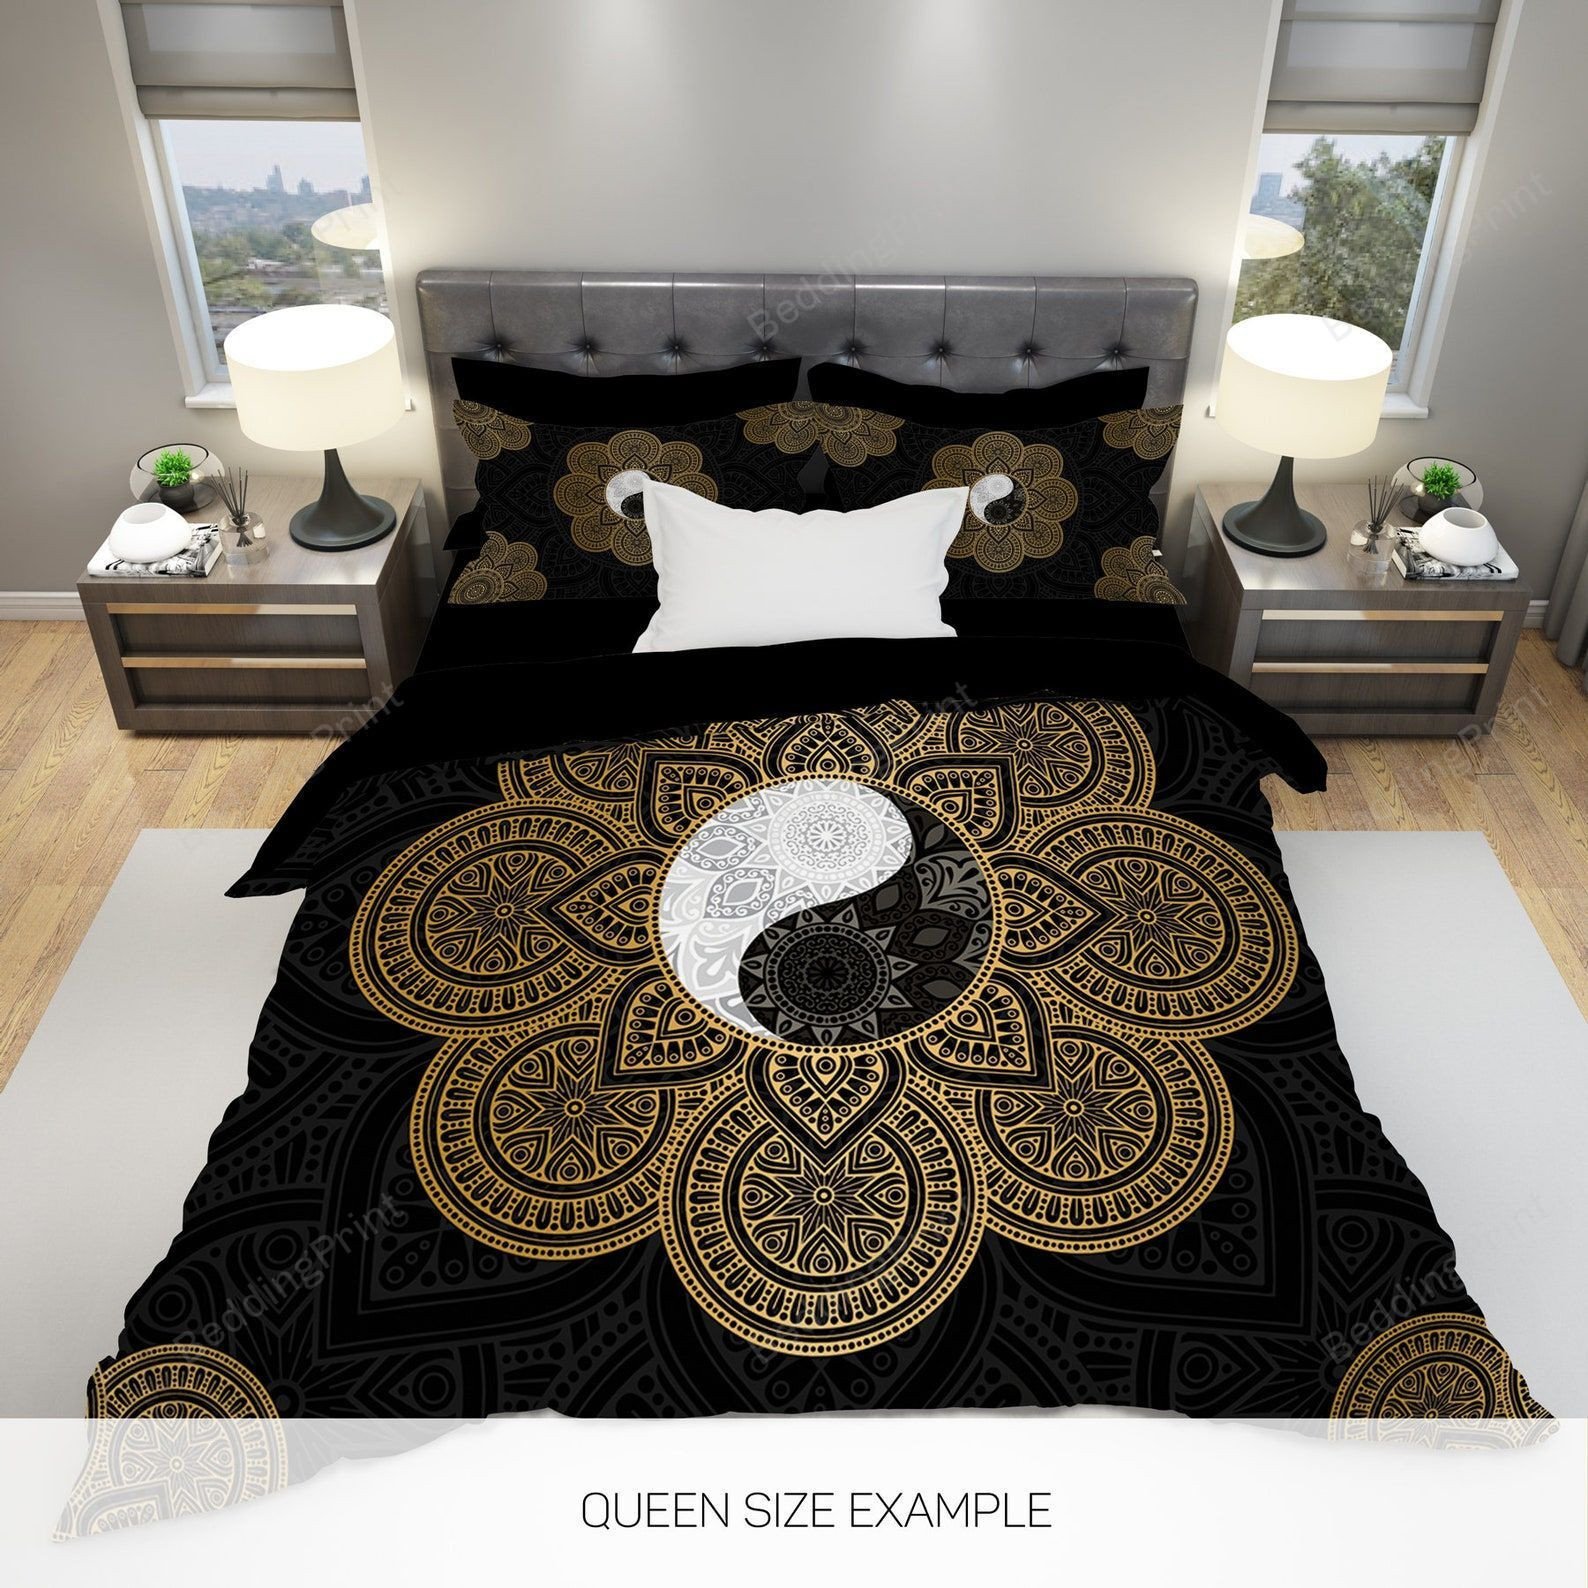 Yin Yang, Mandala, Black And Gold Bed Sheets Duvet Cover Bedding Sets